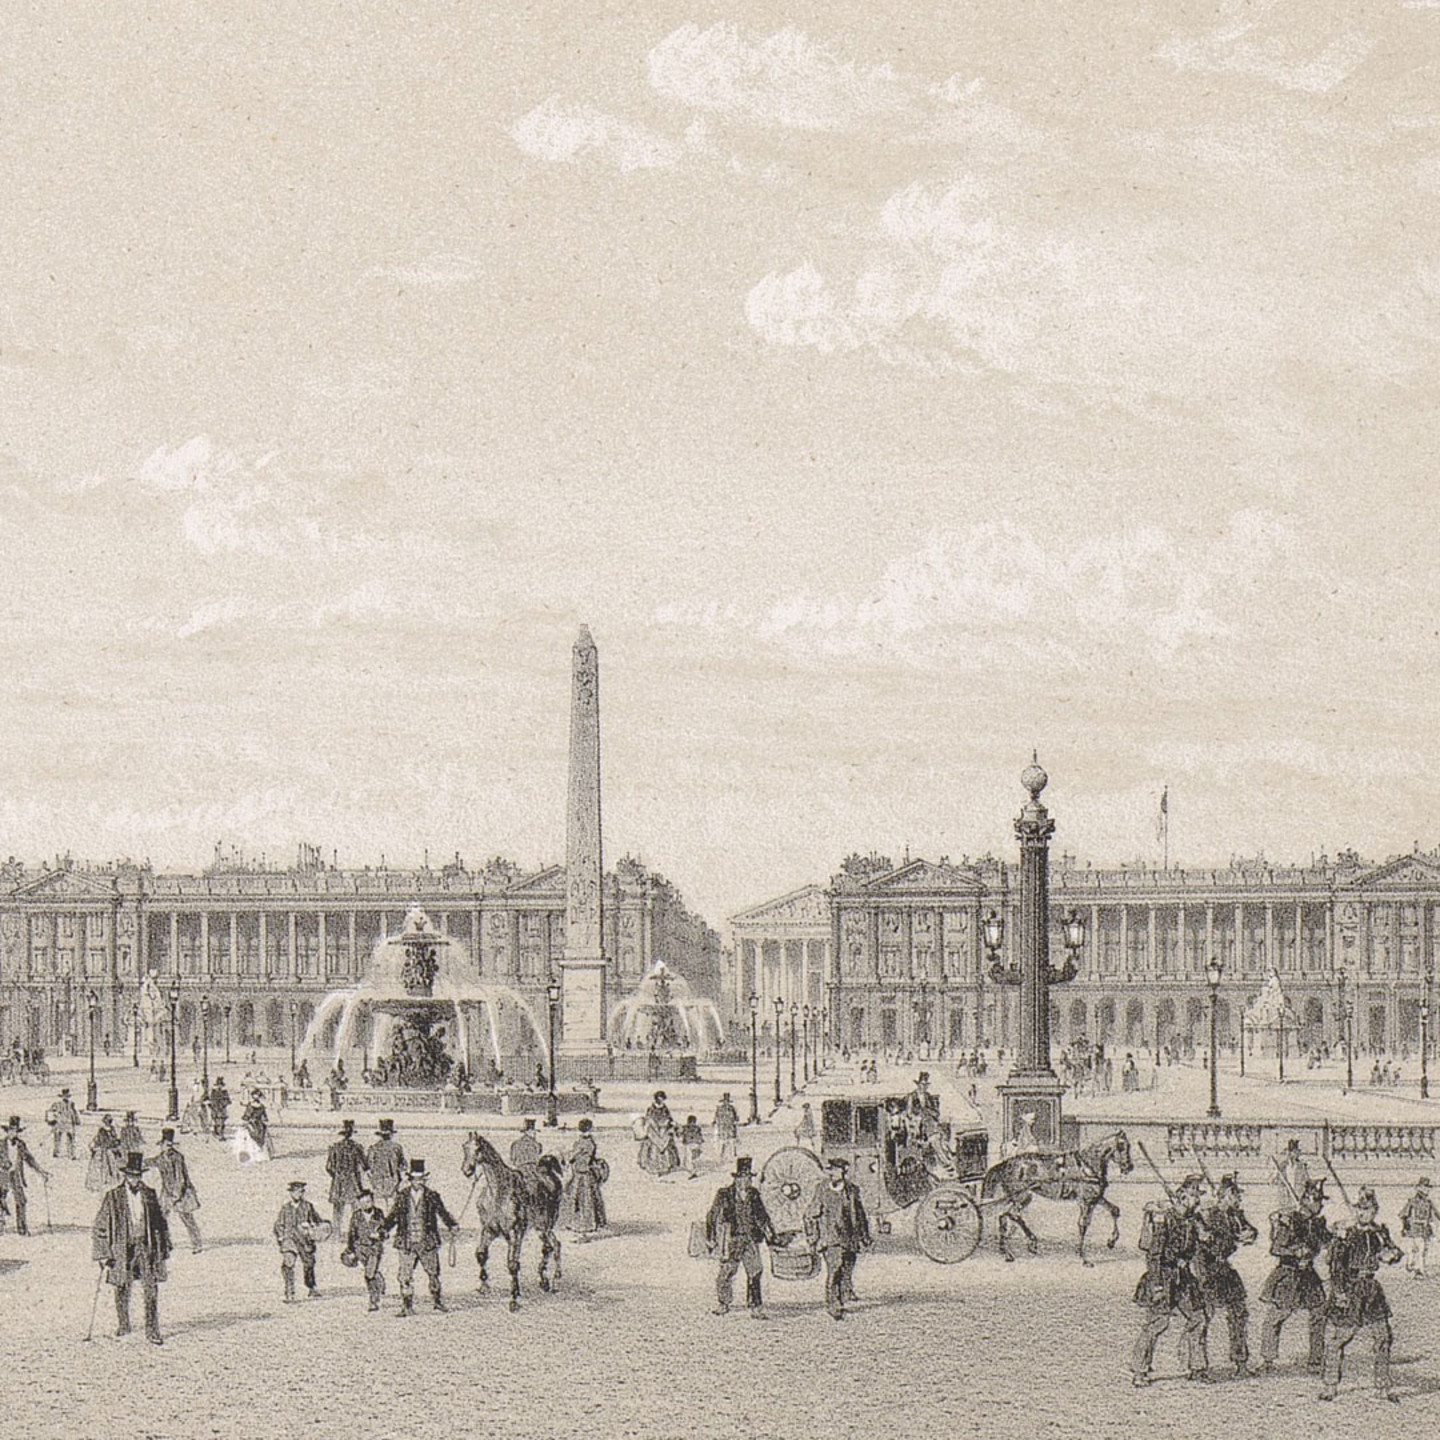 Zeichnung von Hittorff: Dargestellt ist ein Ausschnitt des Place de la Concorde mit dem Obelisken von Luxor und zwei Brunnen. 